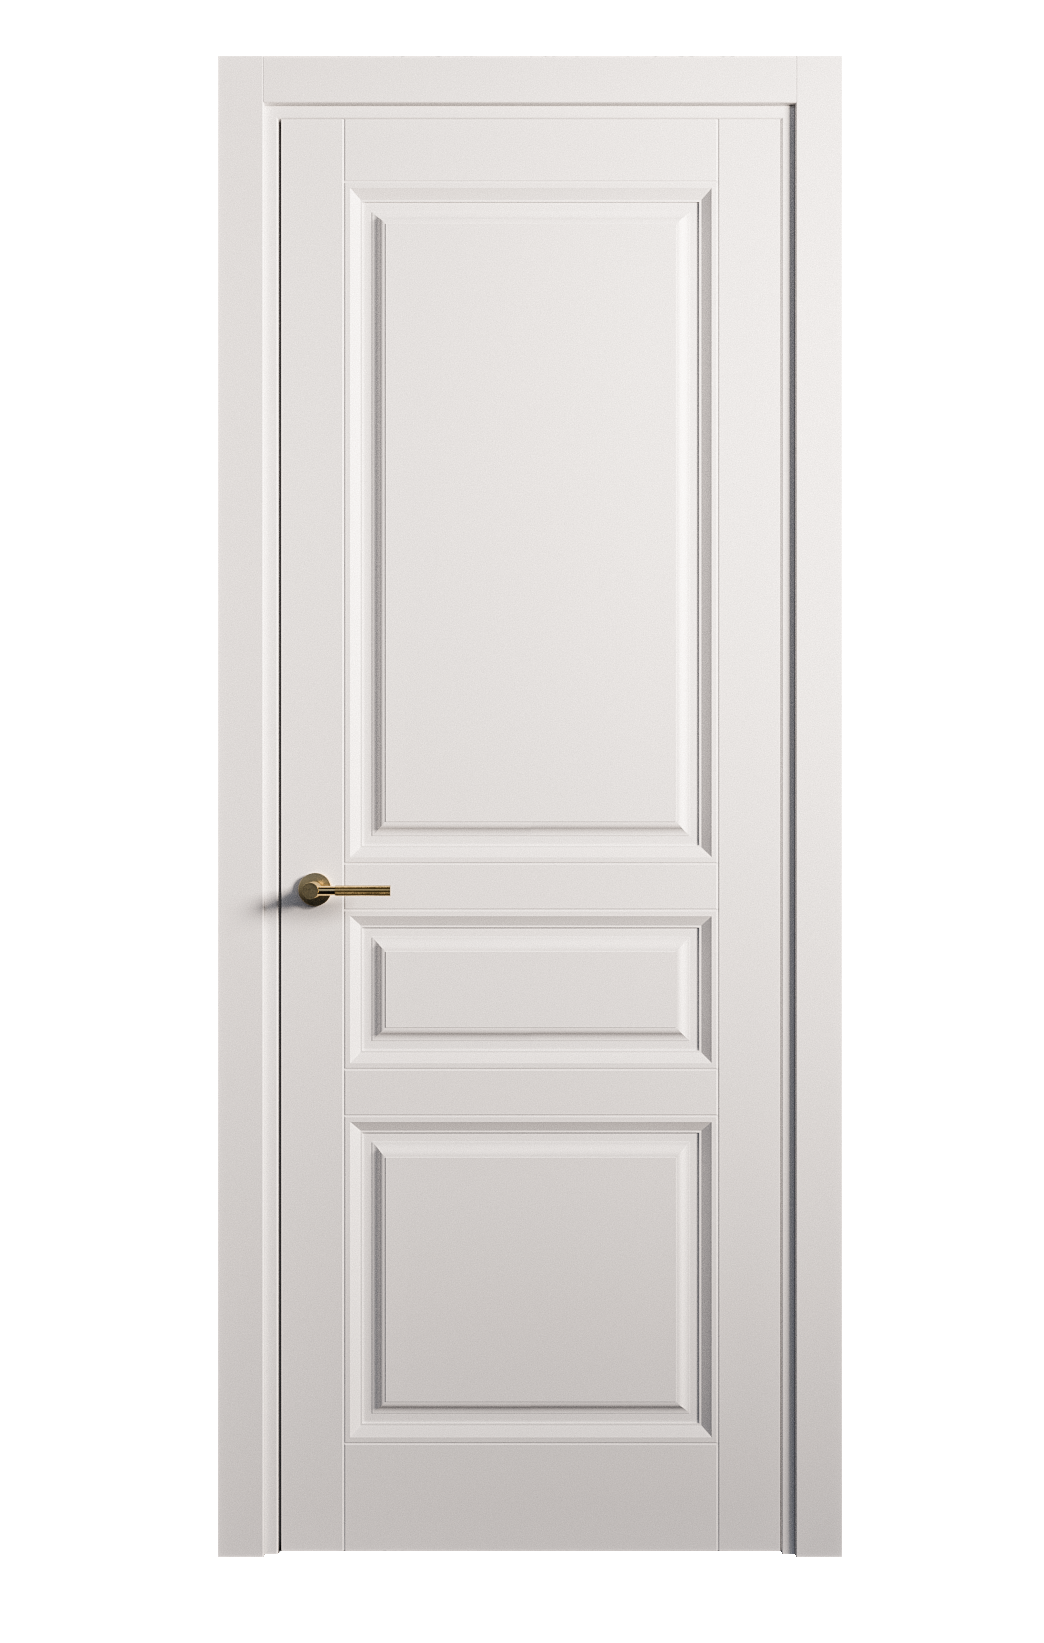 Межкомнатная дверь Venezia-2 глухая эмаль ral 9003 25714